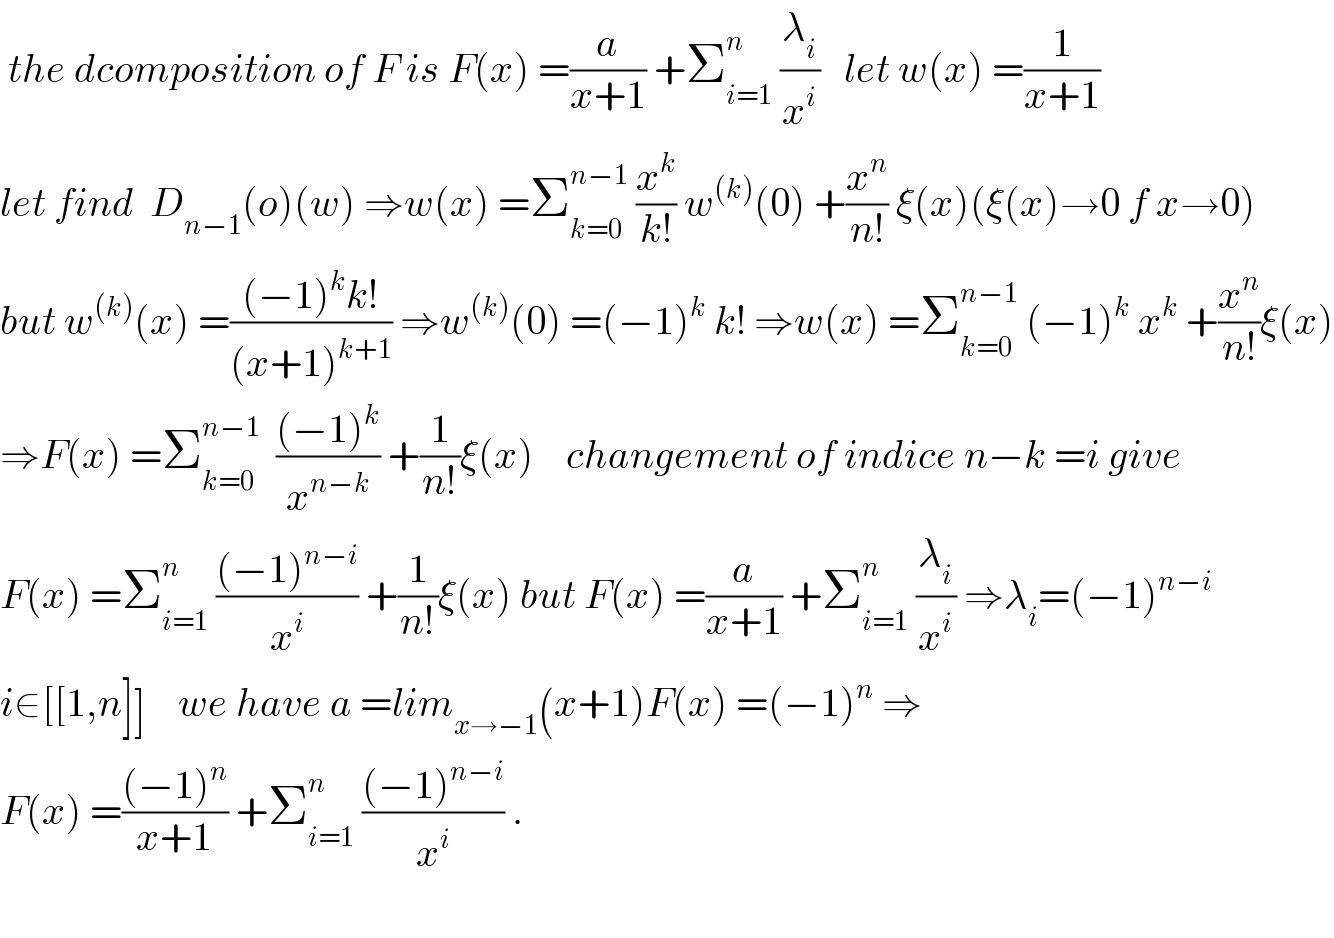  the dcomposition of F is F(x) =(a/(x+1)) +Σ_(i=1) ^n  (λ_i /x^i )   let w(x) =(1/(x+1))  let find  D_(n−1) (o)(w) ⇒w(x) =Σ_(k=0) ^(n−1)  (x^k /(k!)) w^((k)) (0) +(x^n /(n!)) ξ(x)(ξ(x)→0 f x→0)  but w^((k)) (x) =(((−1)^k k!)/((x+1)^(k+1) )) ⇒w^((k)) (0) =(−1)^k  k! ⇒w(x) =Σ_(k=0) ^(n−1)  (−1)^k  x^k  +(x^n /(n!))ξ(x)  ⇒F(x) =Σ_(k=0) ^(n−1)   (((−1)^k )/x^(n−k) ) +(1/(n!))ξ(x)    changement of indice n−k =i give  F(x) =Σ_(i=1) ^n  (((−1)^(n−i) )/x^i ) +(1/(n!))ξ(x) but F(x) =(a/(x+1)) +Σ_(i=1) ^n  (λ_i /x^i ) ⇒λ_i =(−1)^(n−i)   i∈[[1,n]]    we have a =lim_(x→−1) (x+1)F(x) =(−1)^n  ⇒  F(x) =(((−1)^n )/(x+1)) +Σ_(i=1) ^n  (((−1)^(n−i) )/x^i ) .    